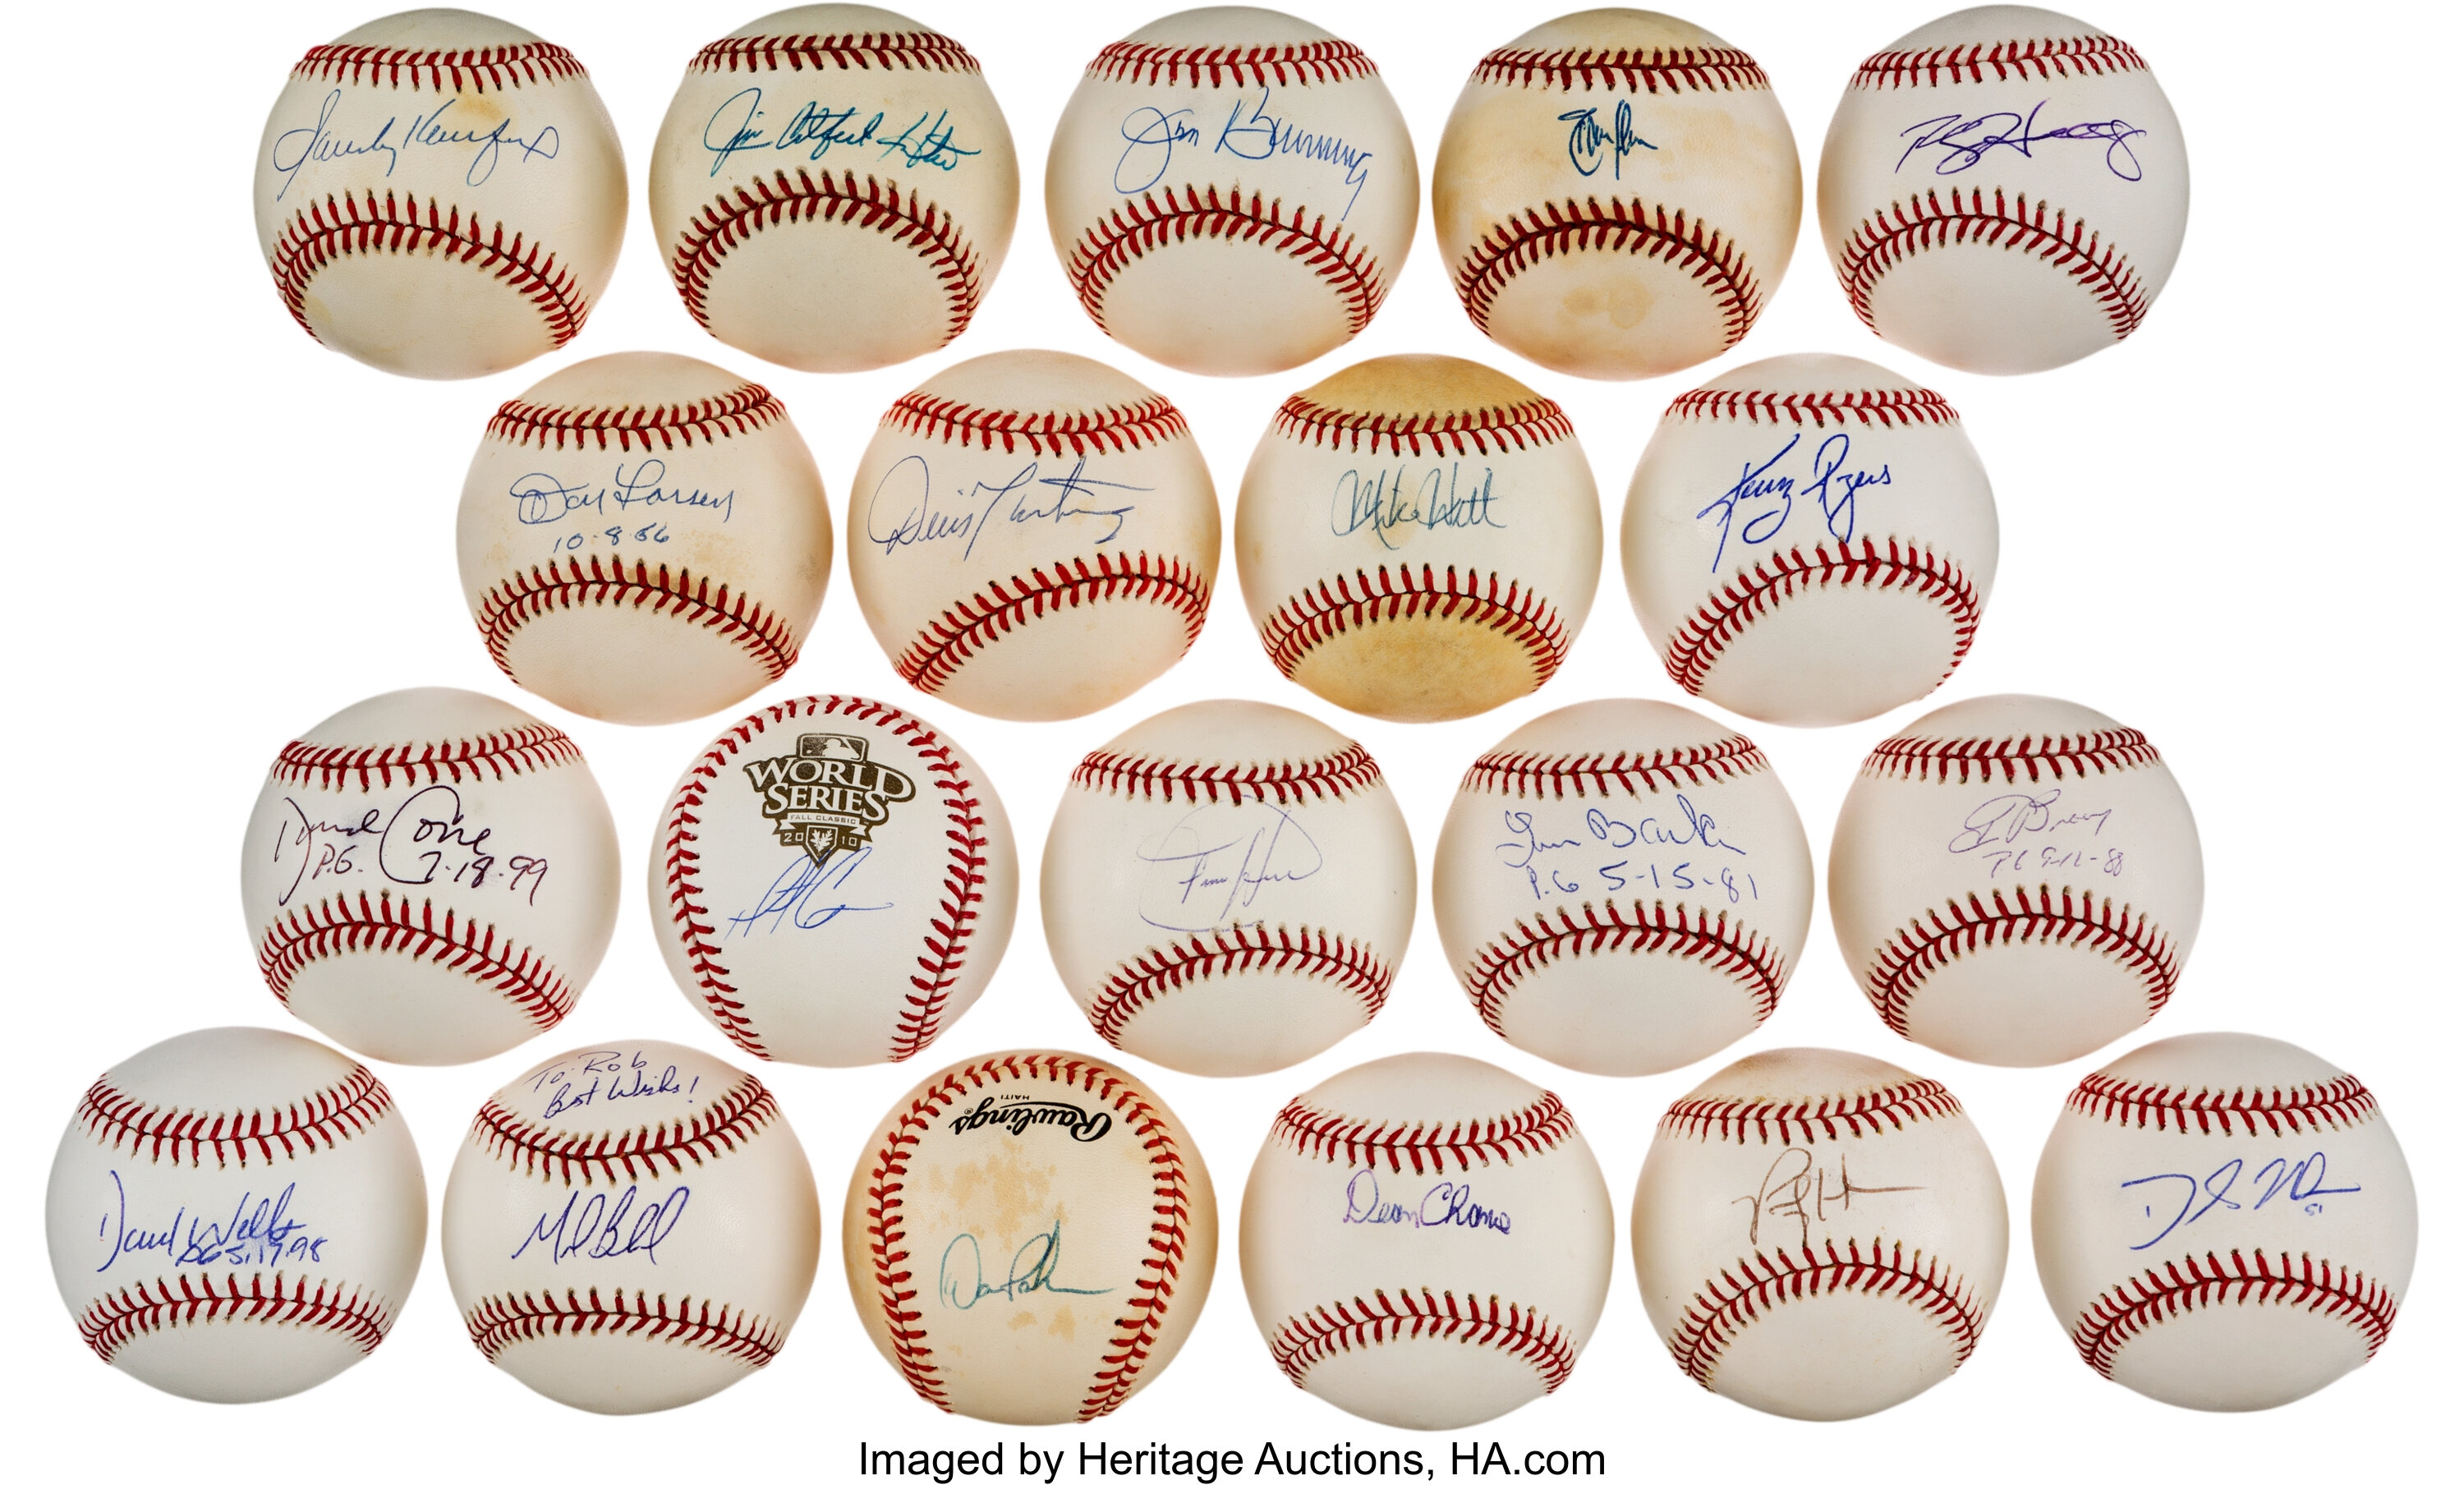 Sandy Koufax Randy Johnson Perfect Game Pitchers Signed Baseball